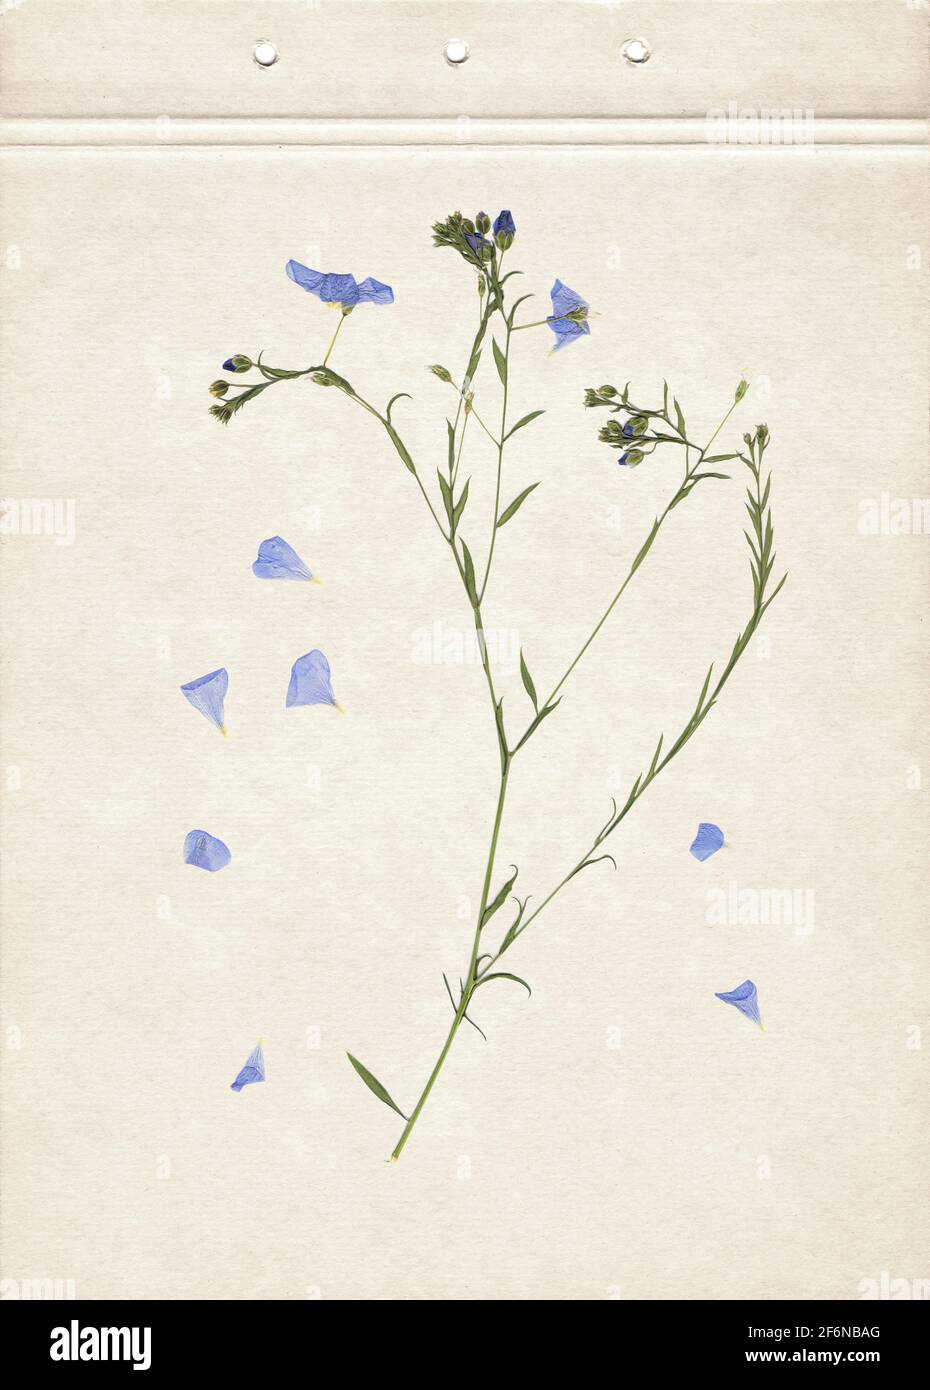 Herbes séchées et pressées. Image numérisée. Arrière-plan herbier vintage sur papier ancien. Composition verticale de l'herbe avec des fleurs bleues sur un carton. Banque D'Images